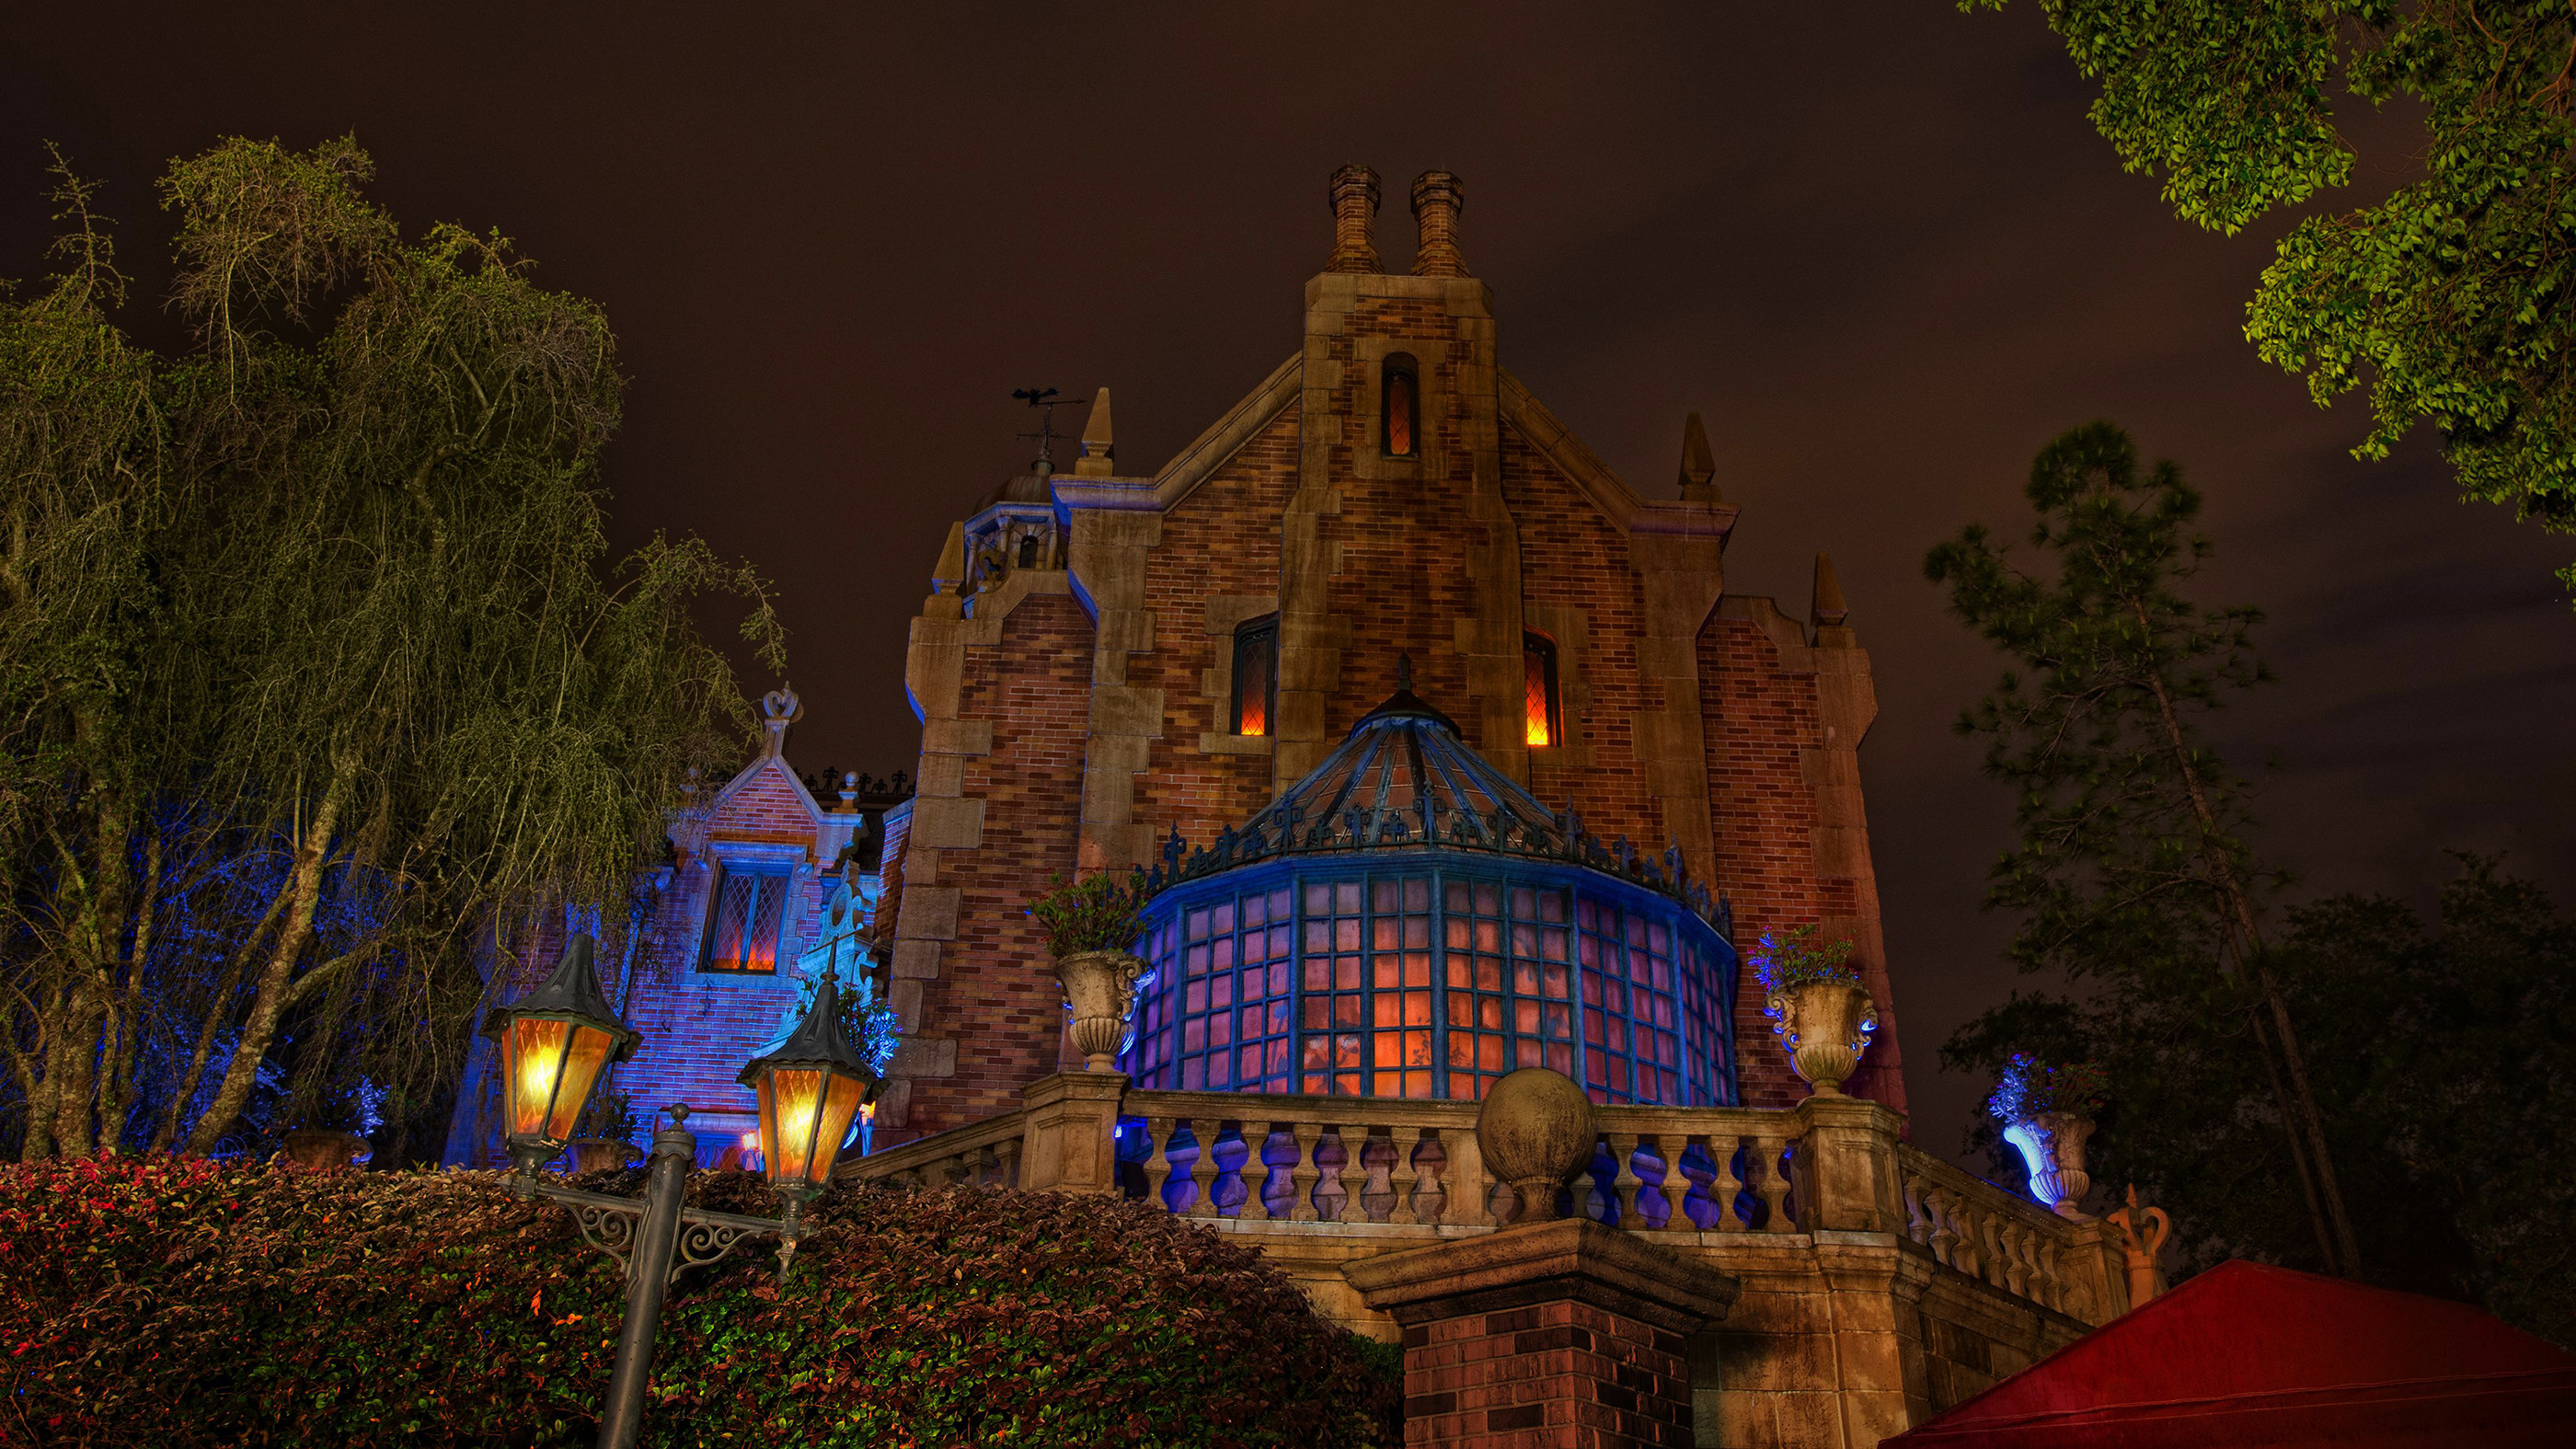 Haunted Mansion at Magic Kingdom at night